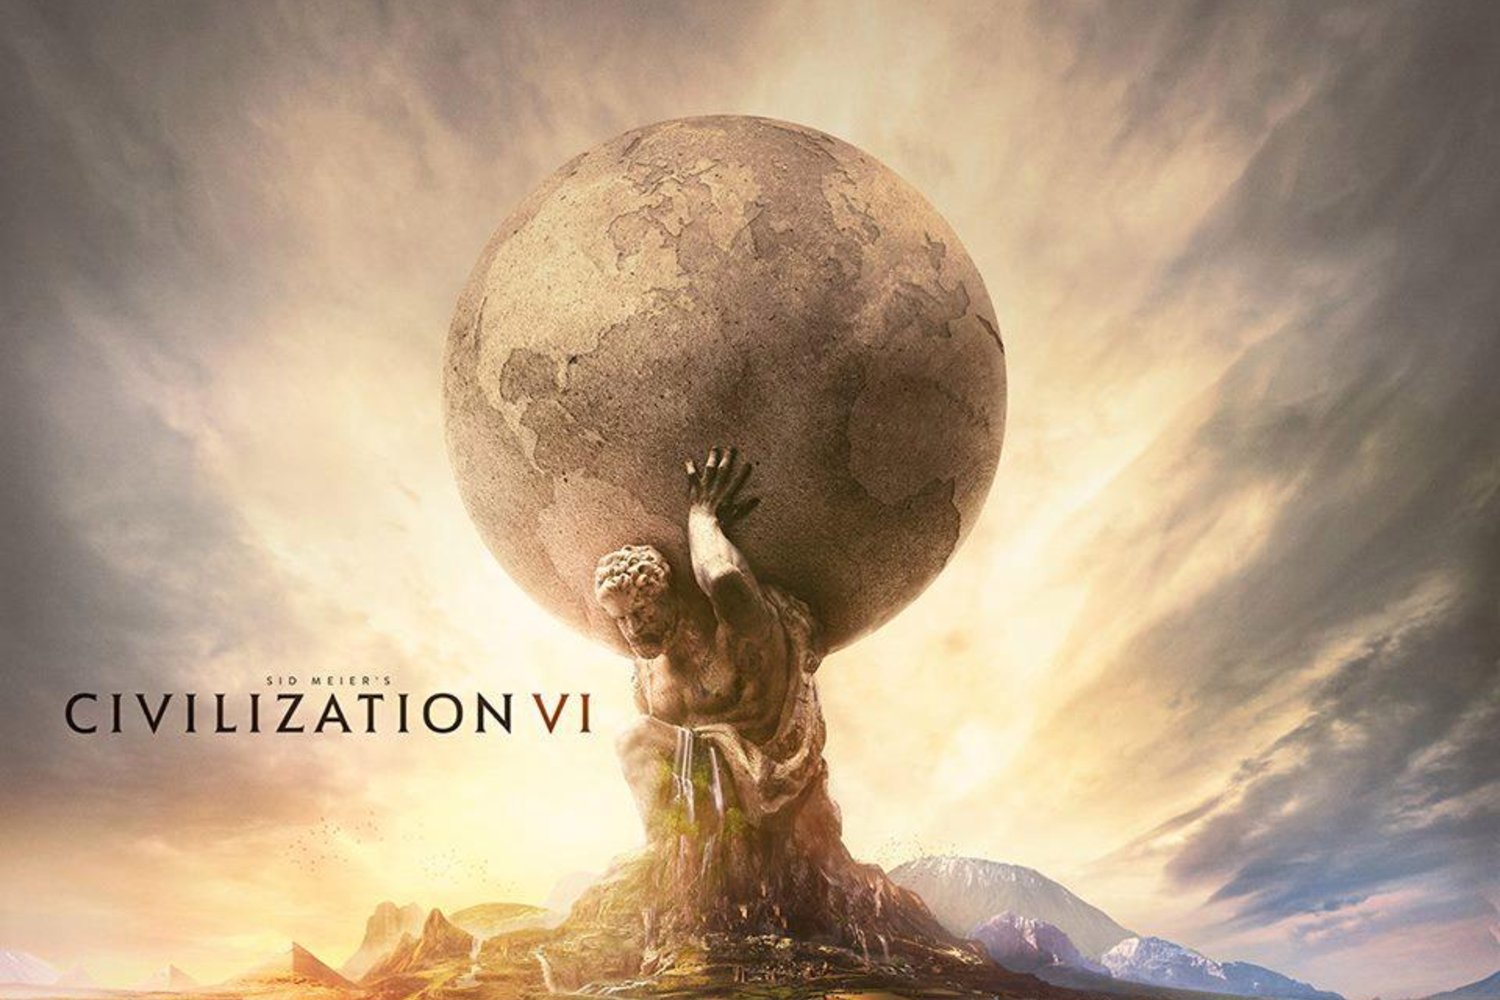 civilization-vi-changes-a-lot